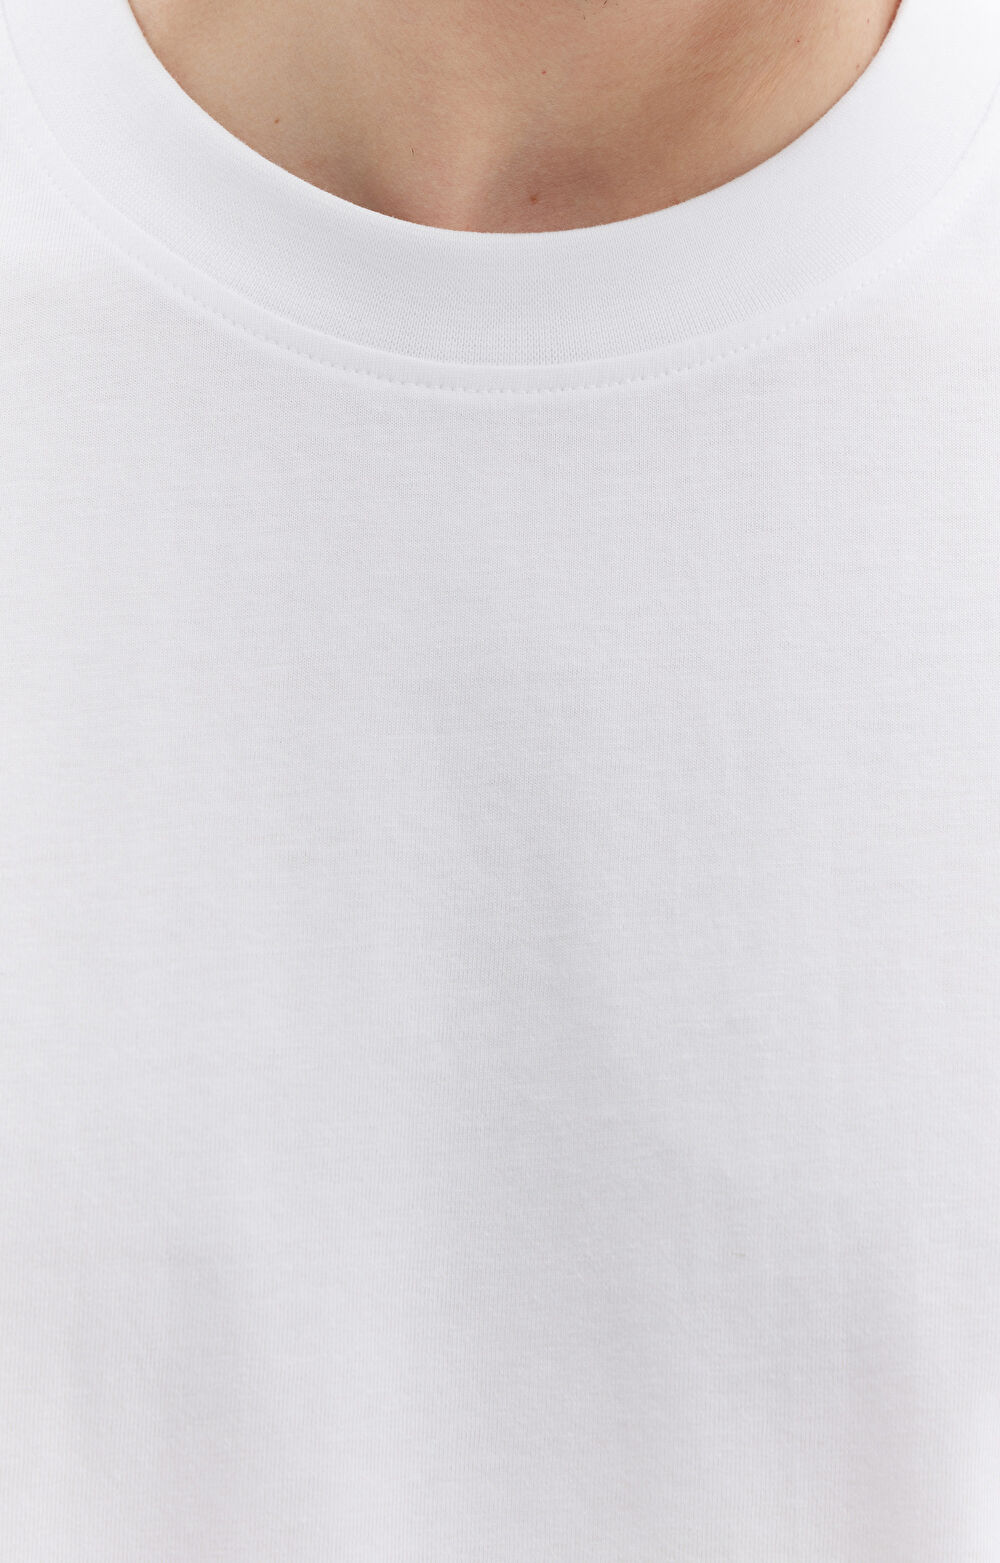 T-shirt męski o sylwetce luźnej z bawełny organicznej